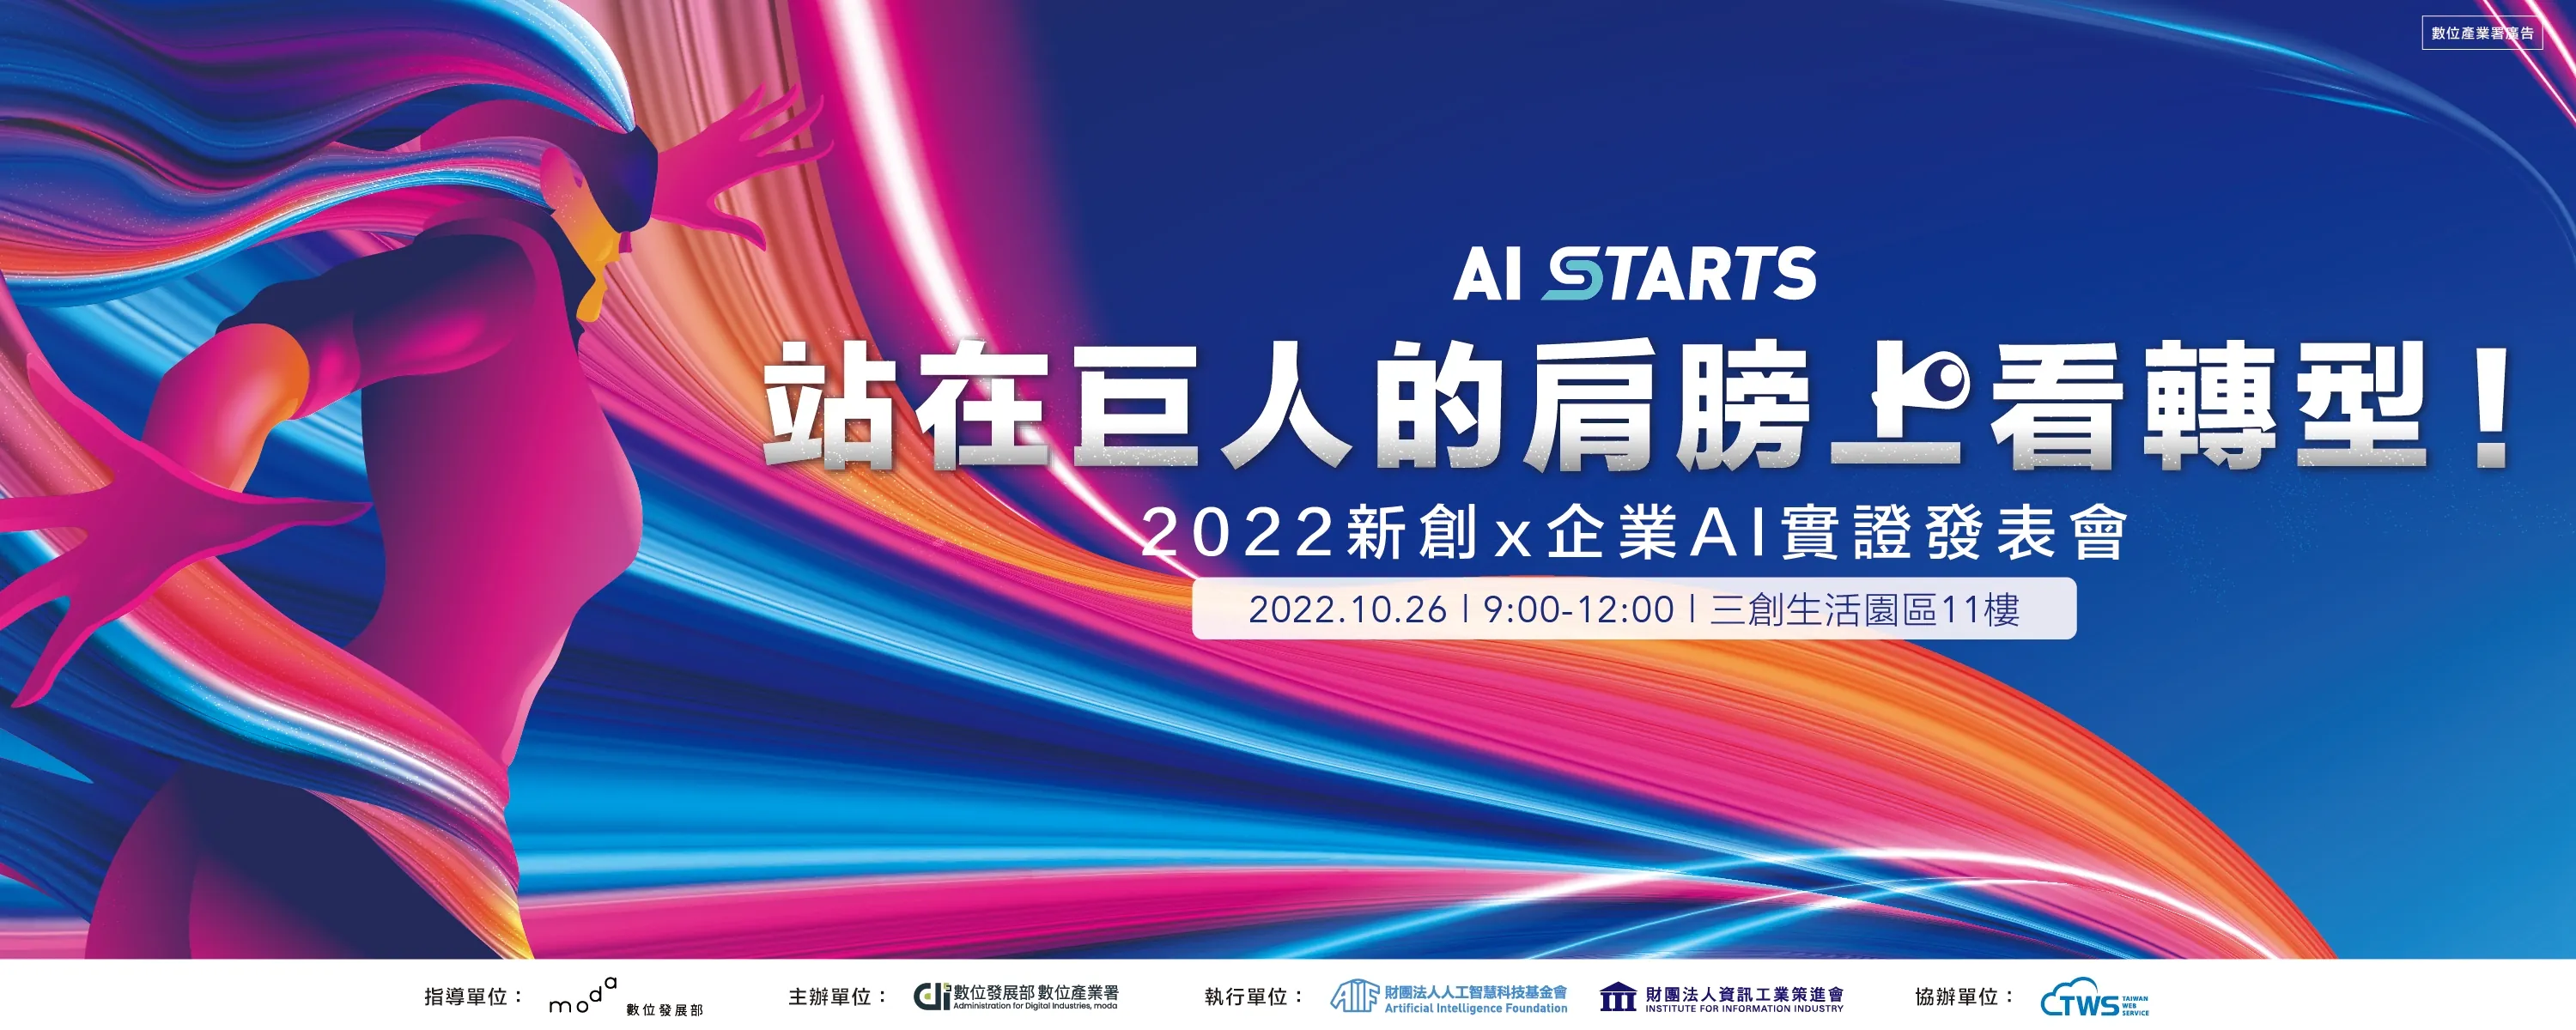 舉辦第二屆「AI Starts」 頒獎典禮及成果發表